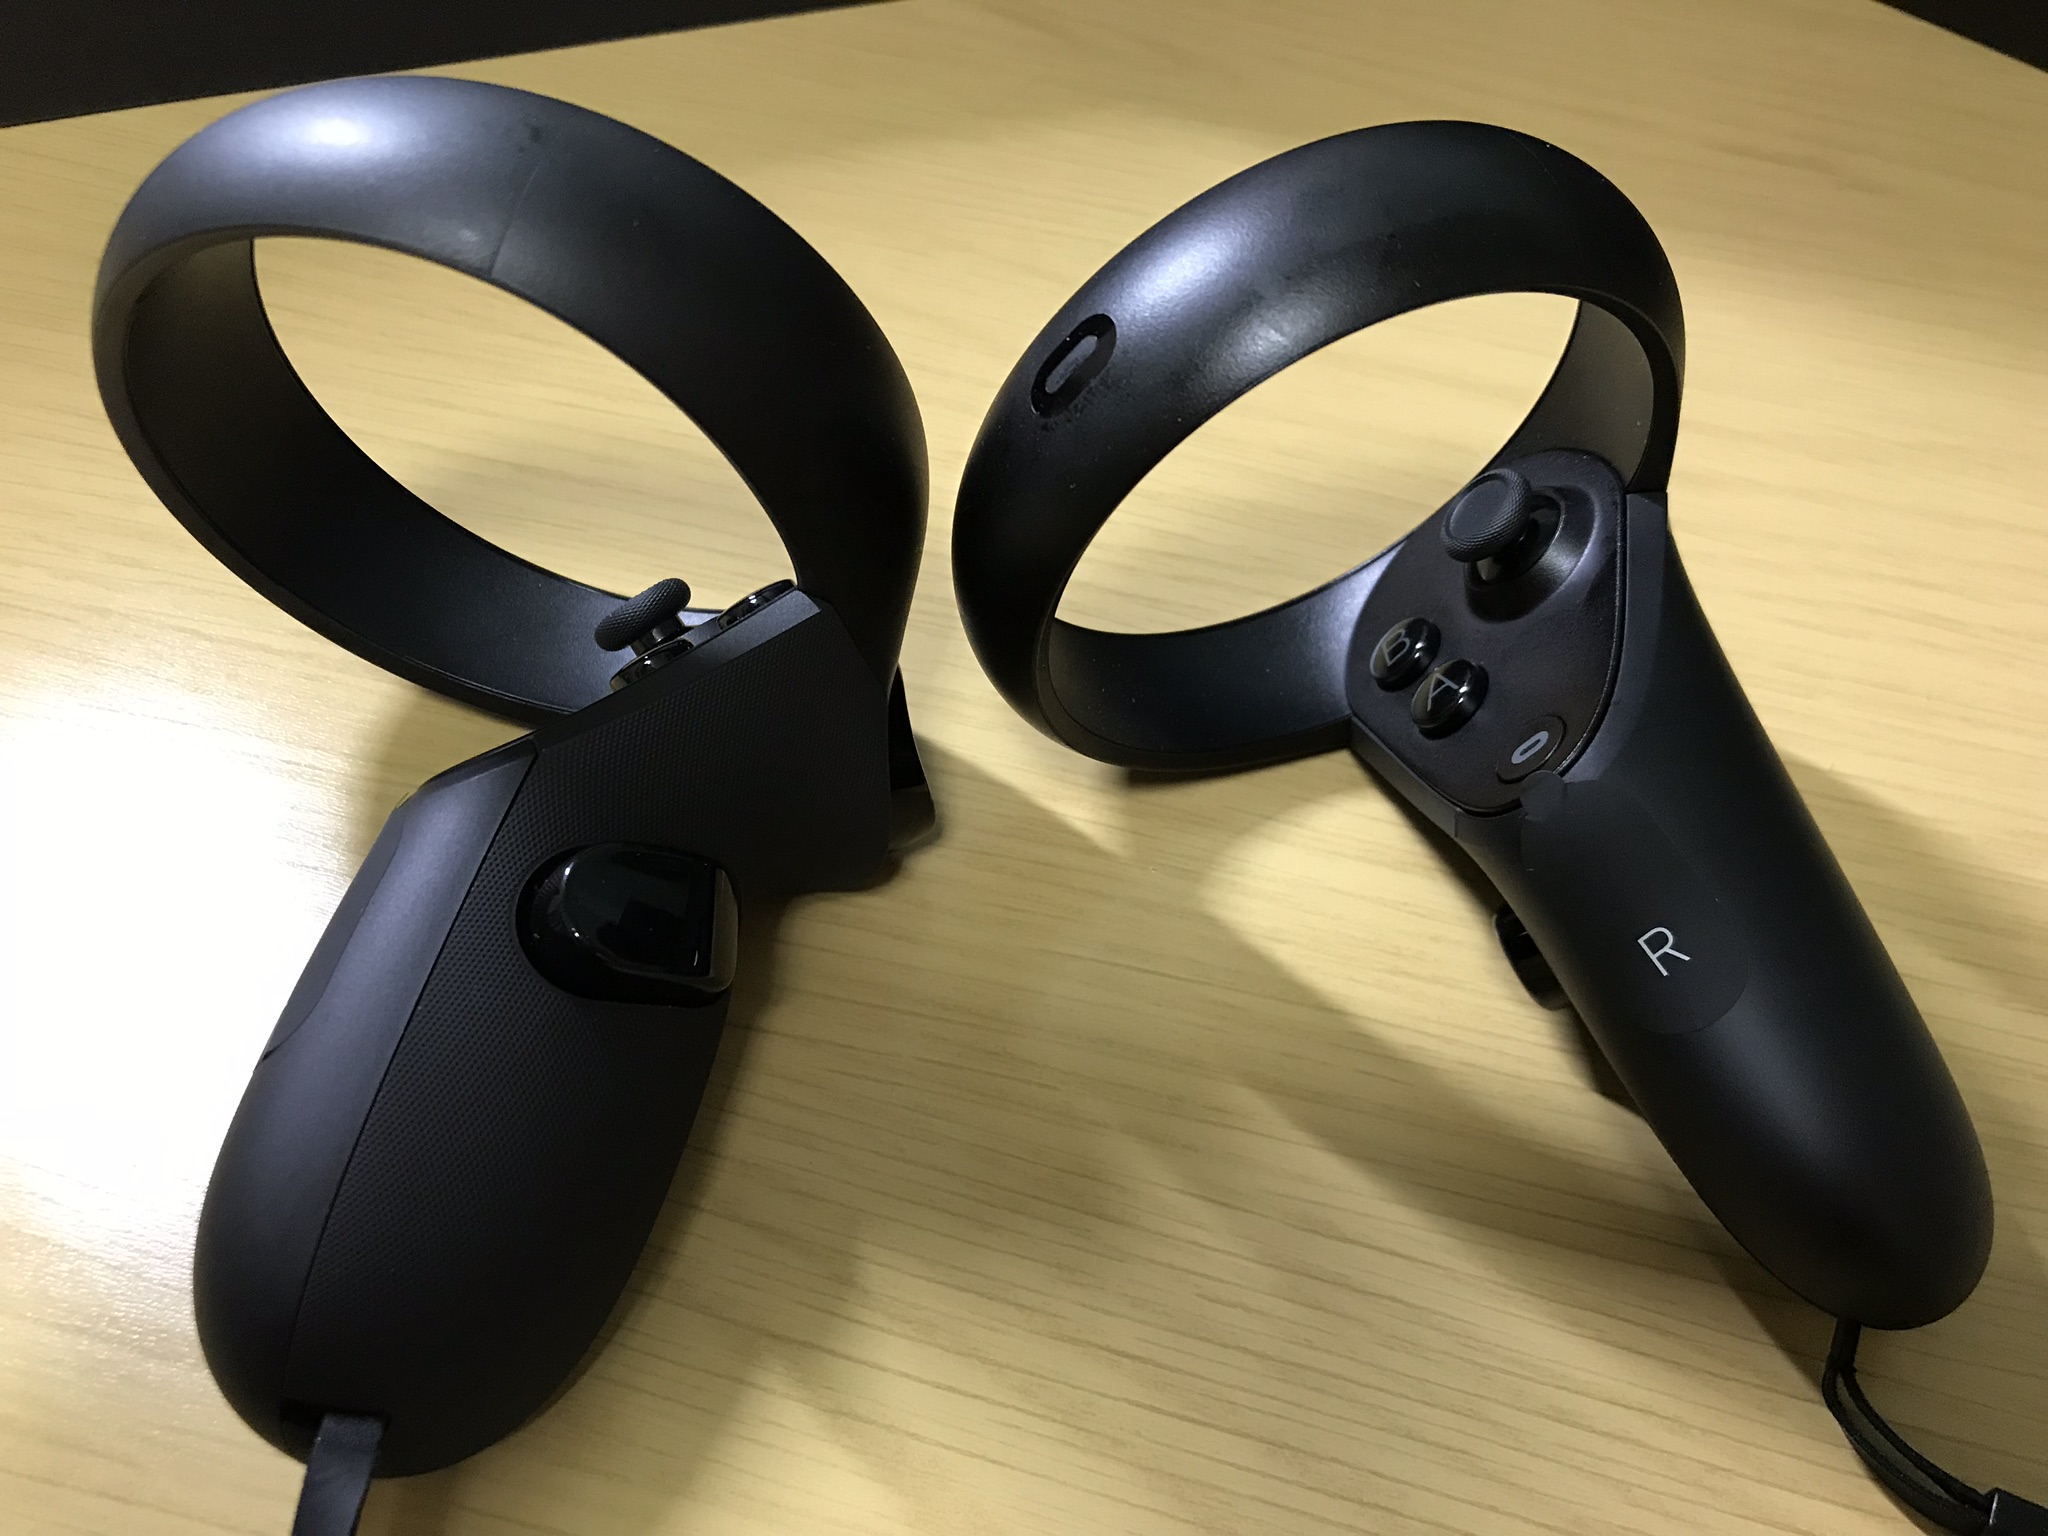 Oculus Questのプレイエリア設定方法ーPC接続不要なので屋外/室内でプレイ可能!!